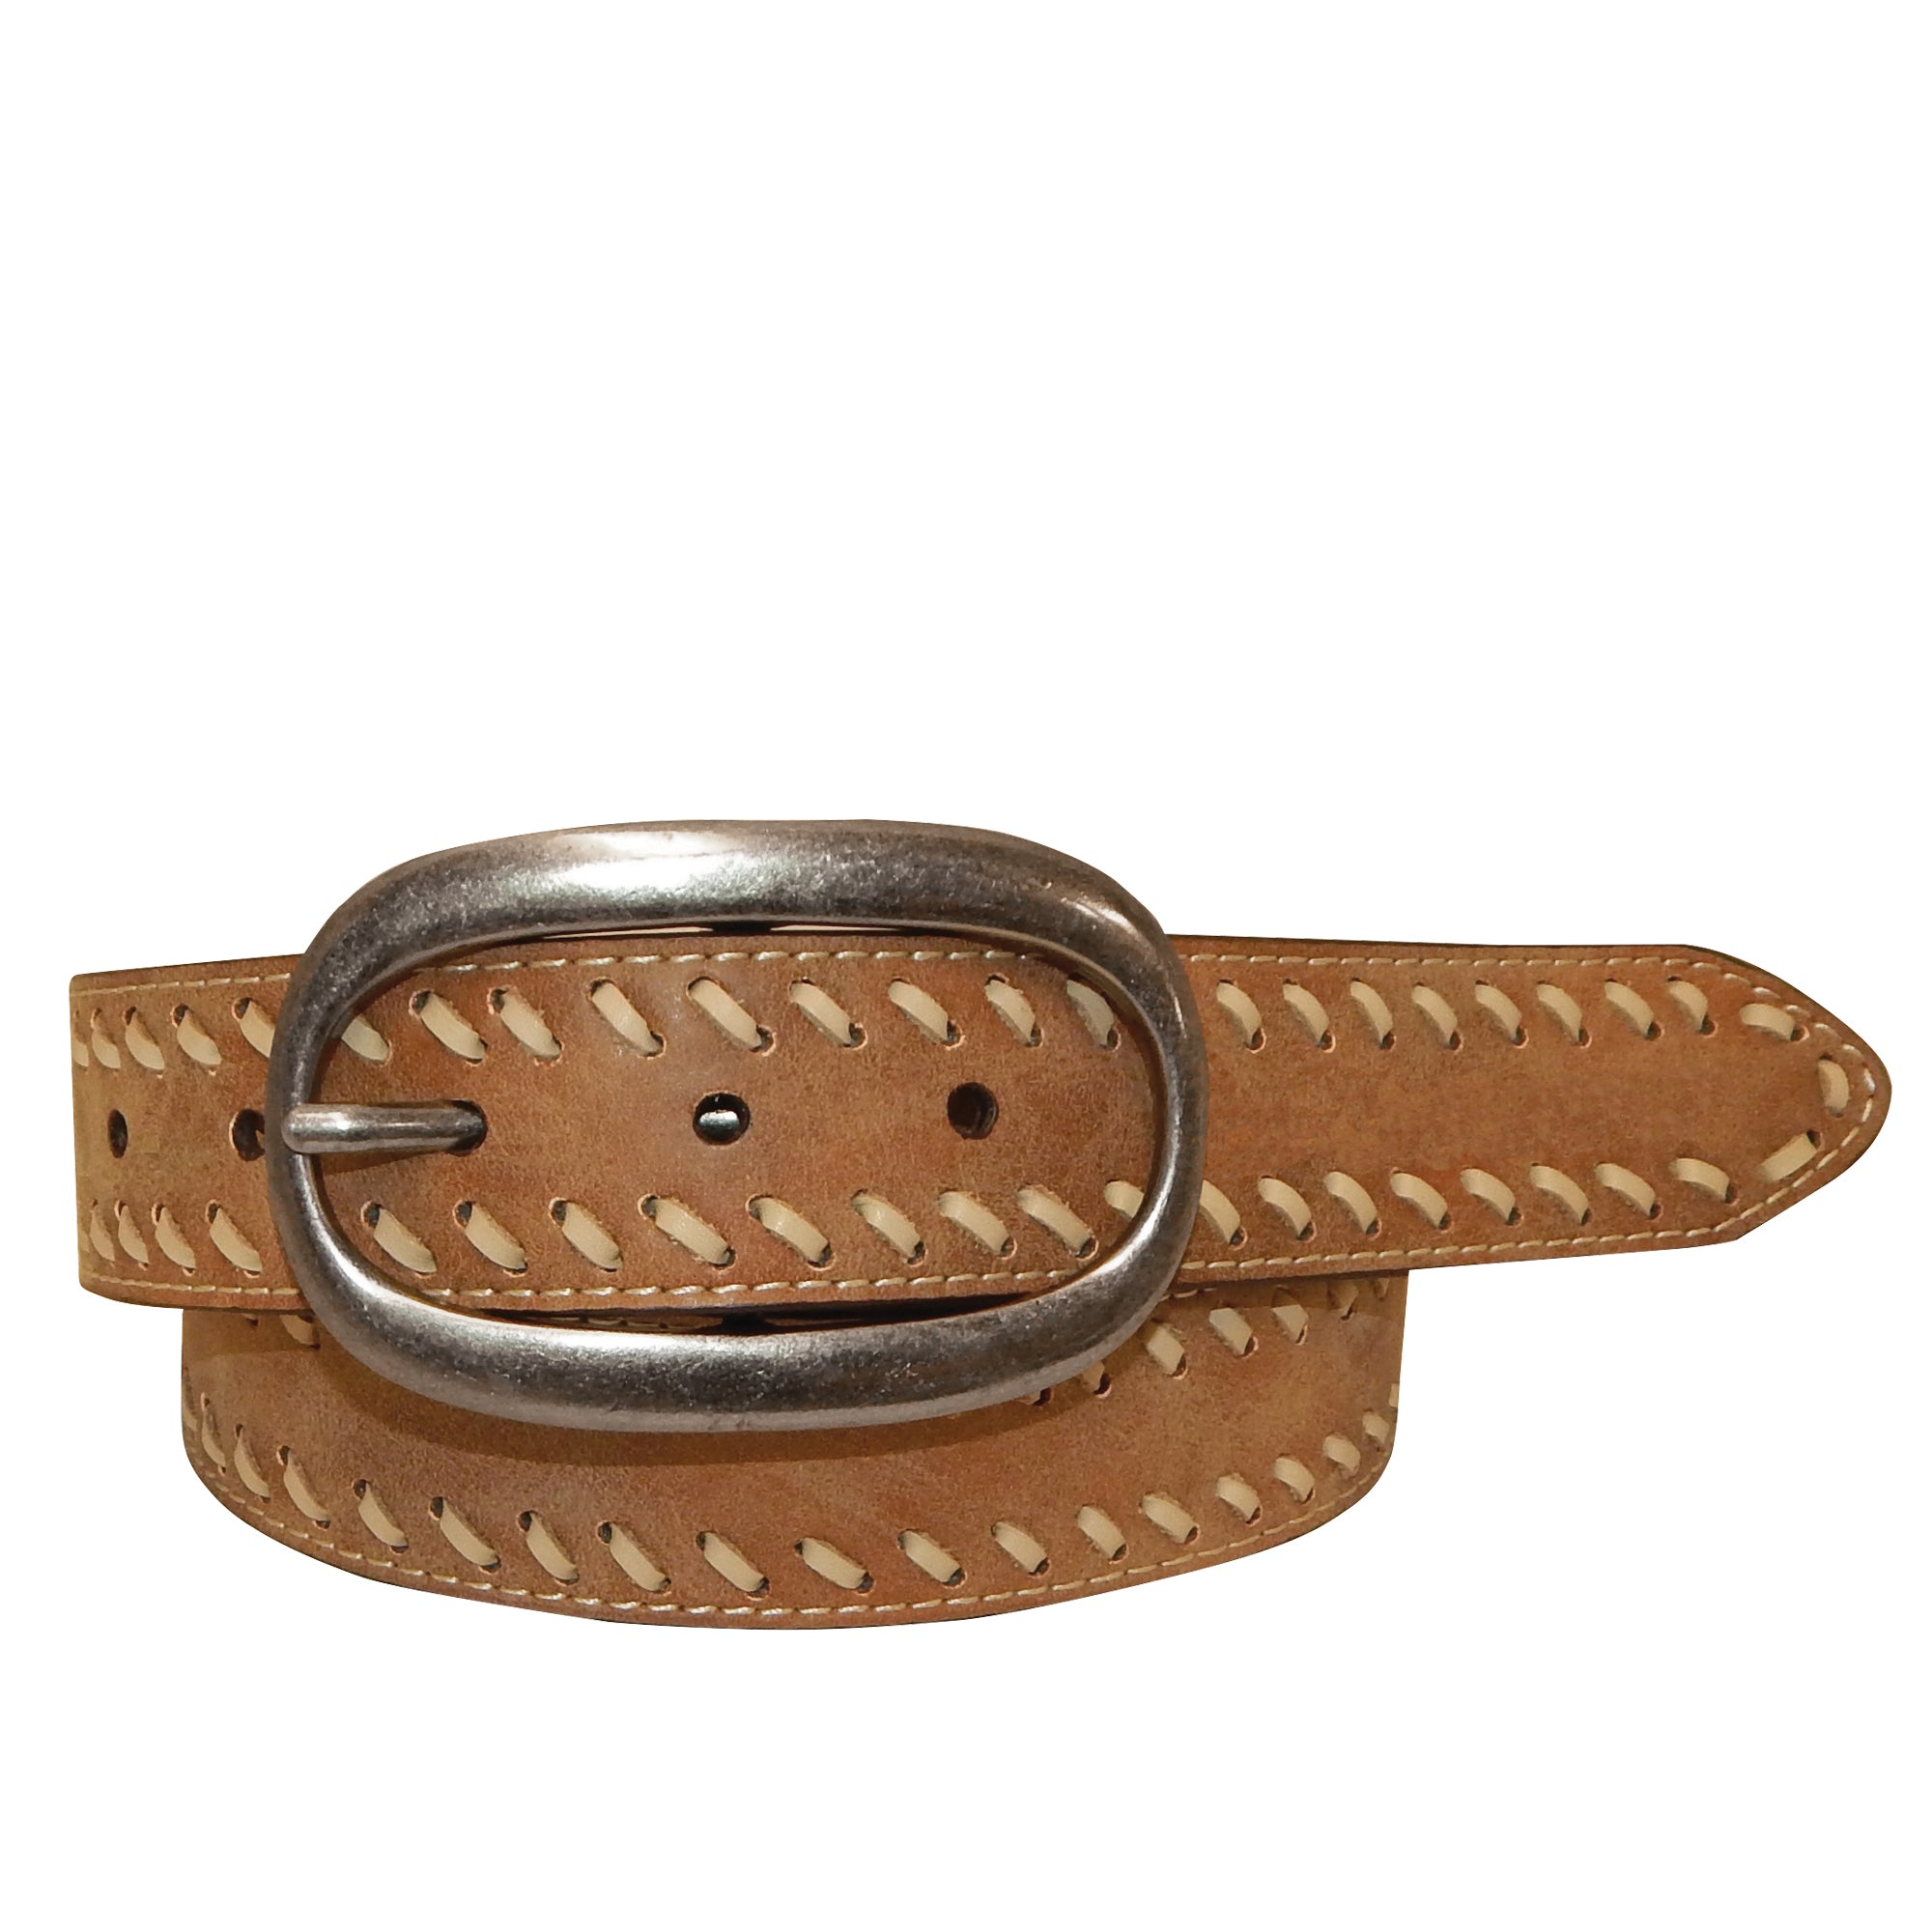 9621300 Roper Ladies 1.3/4" Vintage Genuine Leather with Lacing Belt Brown